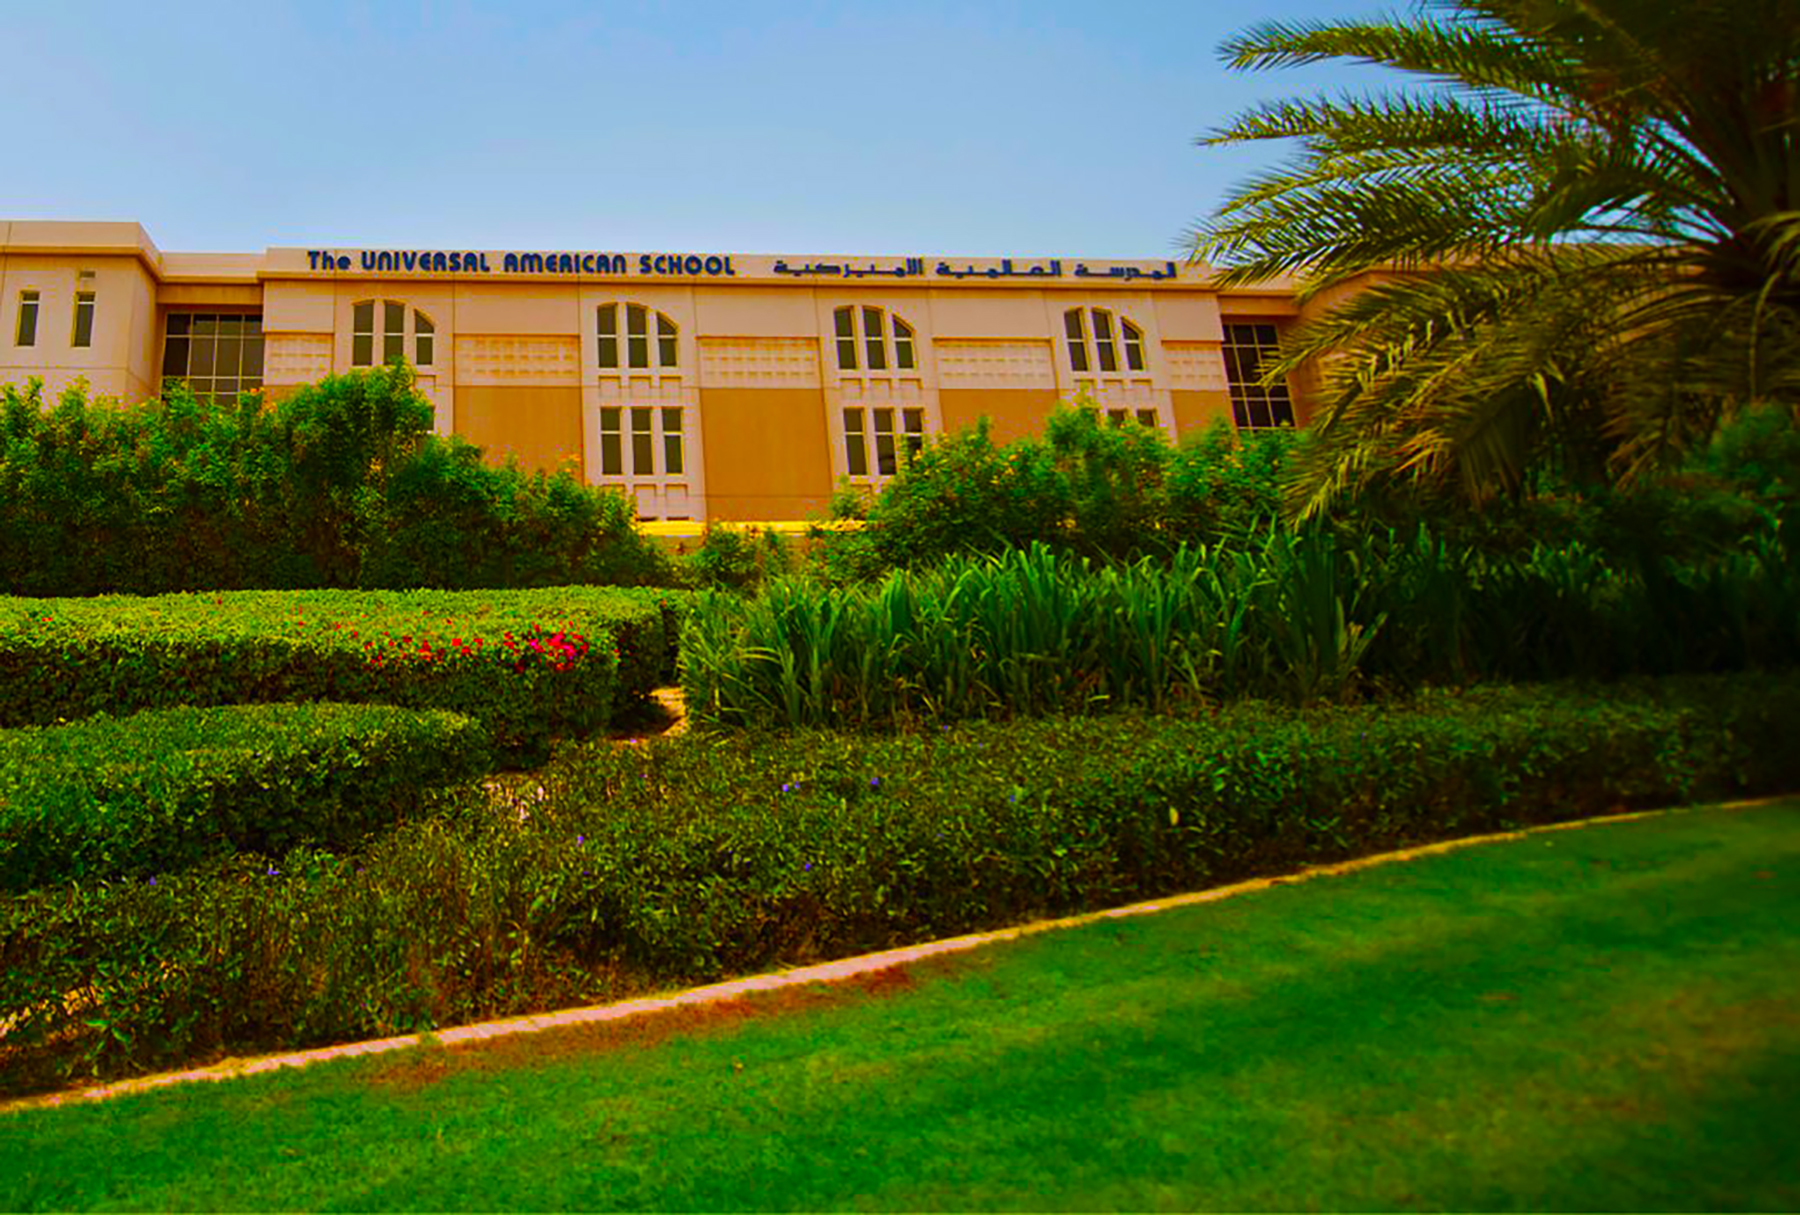 صورة للمدرسة العالمية الأمريكية في دبي كجزء من مراجعة المدرسة بواسطة SchoolCompared.com